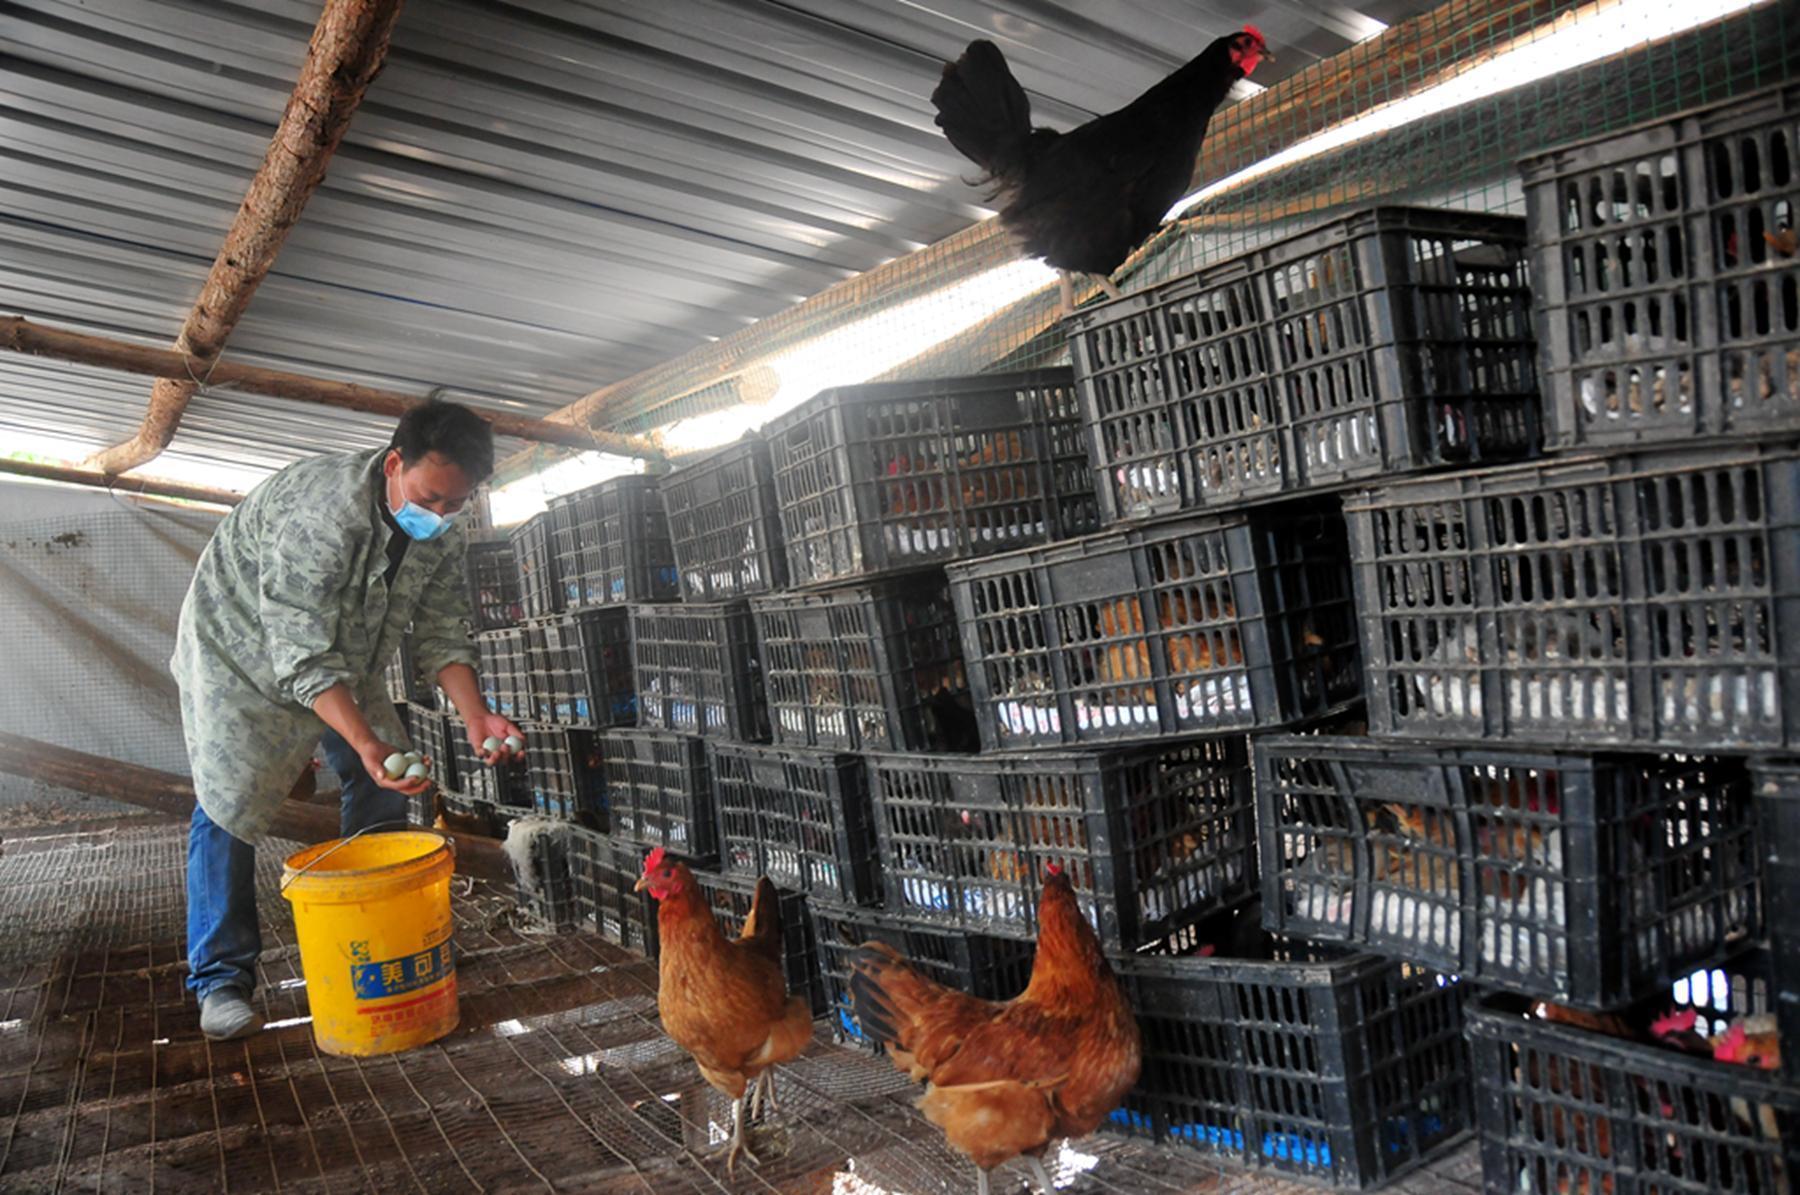 山林养鸡场:农民的银行